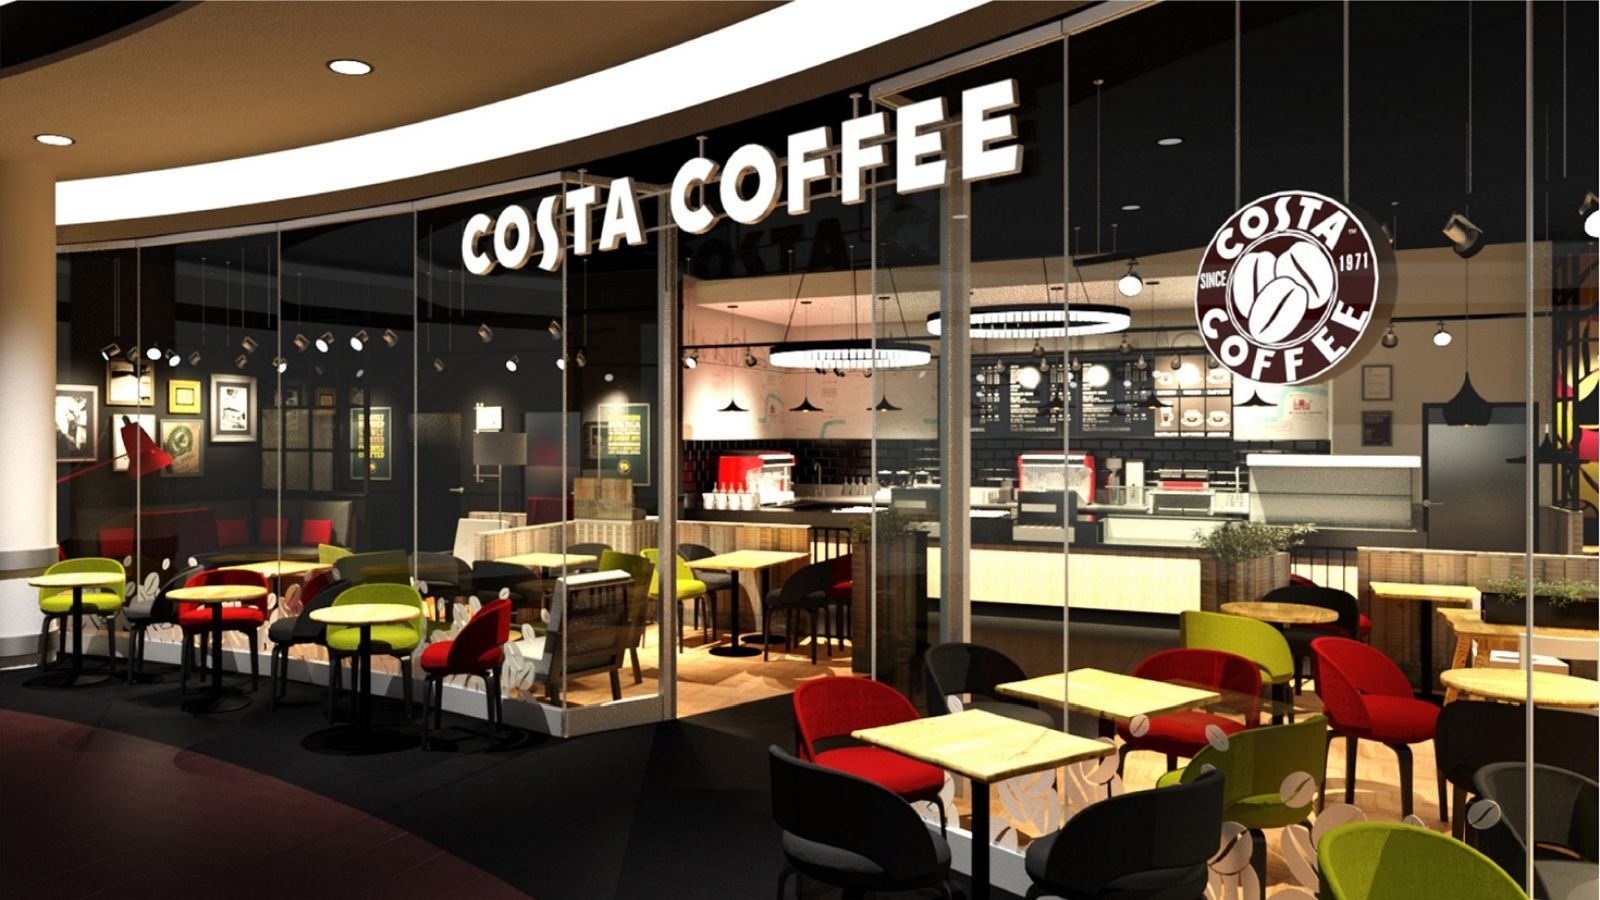 Costa Coffee rozstrzygnęła przetarg COSTA COFFEE mediarun costa coffe